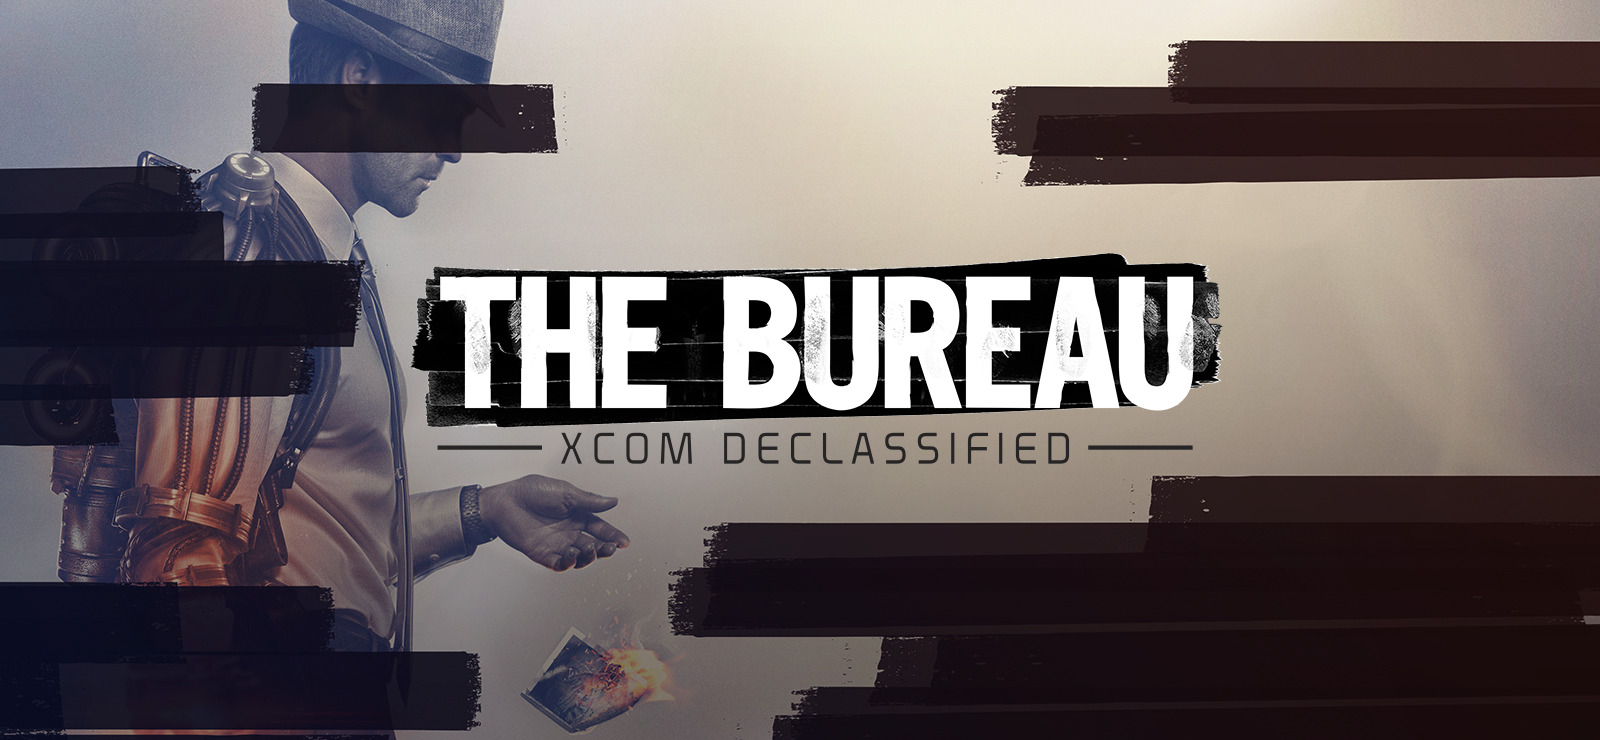 The Bureau Xcom Declassified On Gog Com